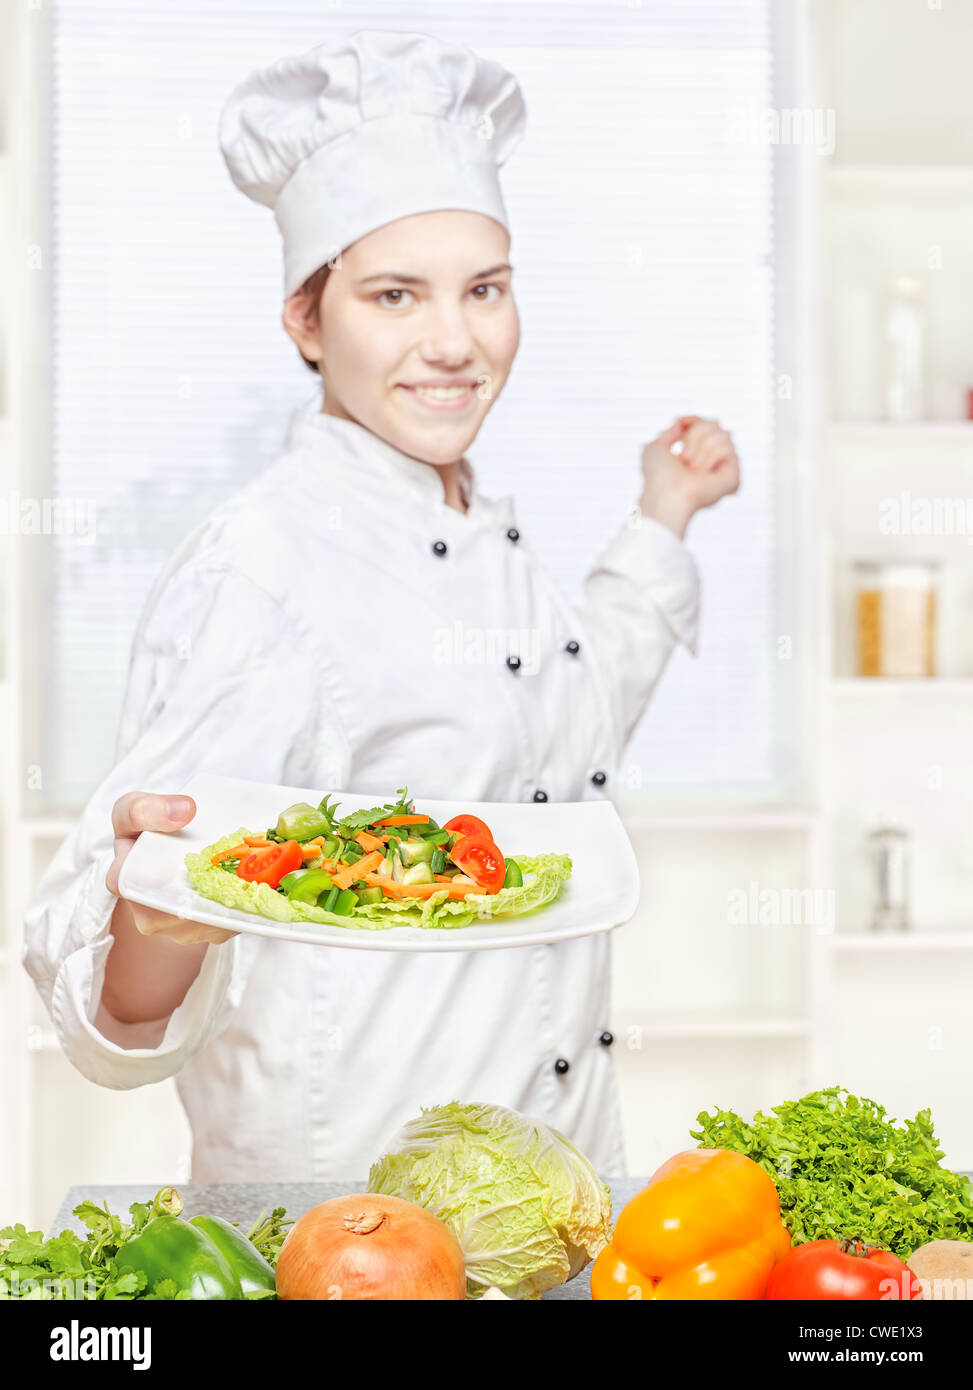 Jungkoch mit vegetarischen Mahlzeit in Küche, Fokus auf Salat Stockfoto